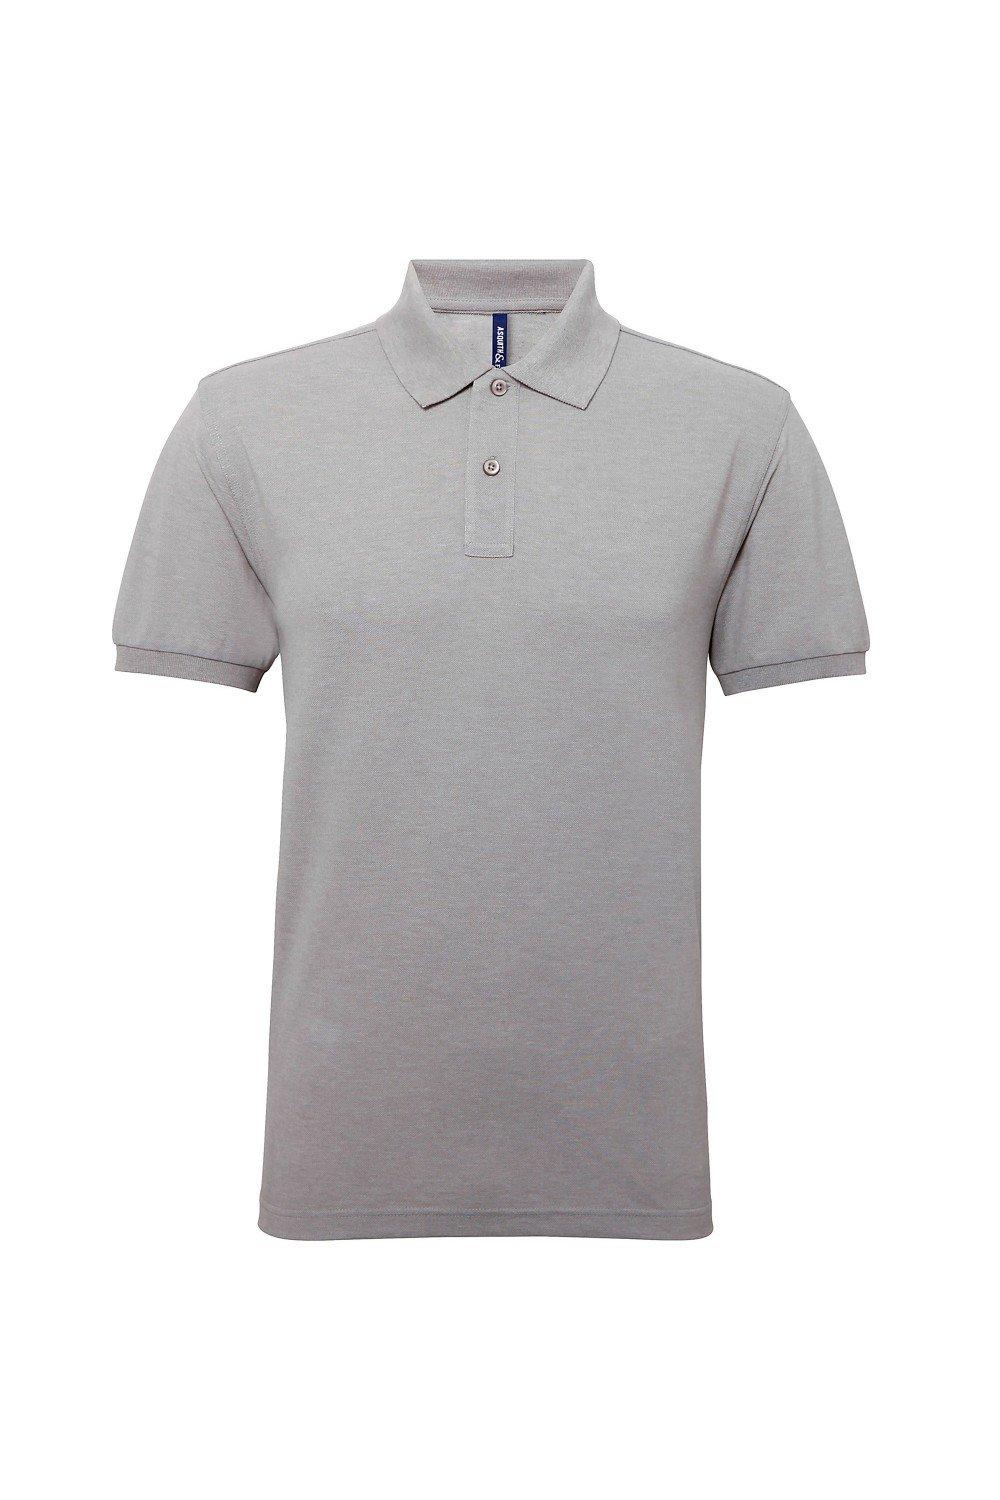 цена Рубашка поло Performance Mix с короткими рукавами Asquith & Fox, серый